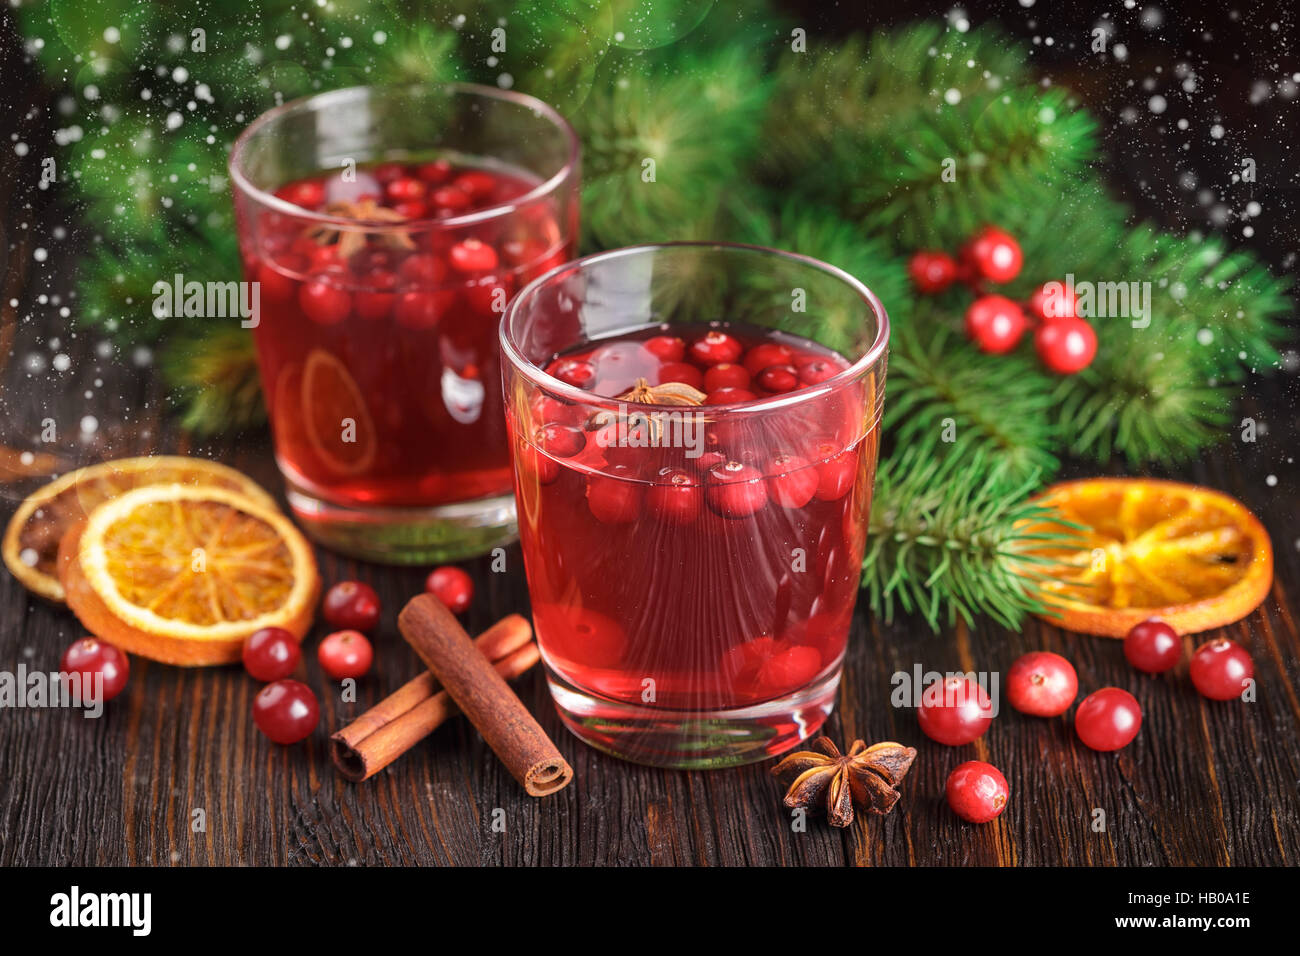 Zwei Gläser Cranberry trinken, Preiselbeeren, Zimtstangen, Anis Sterne und getrocknete Scheiben von Orange auf hölzernen Hintergrund. Stockfoto